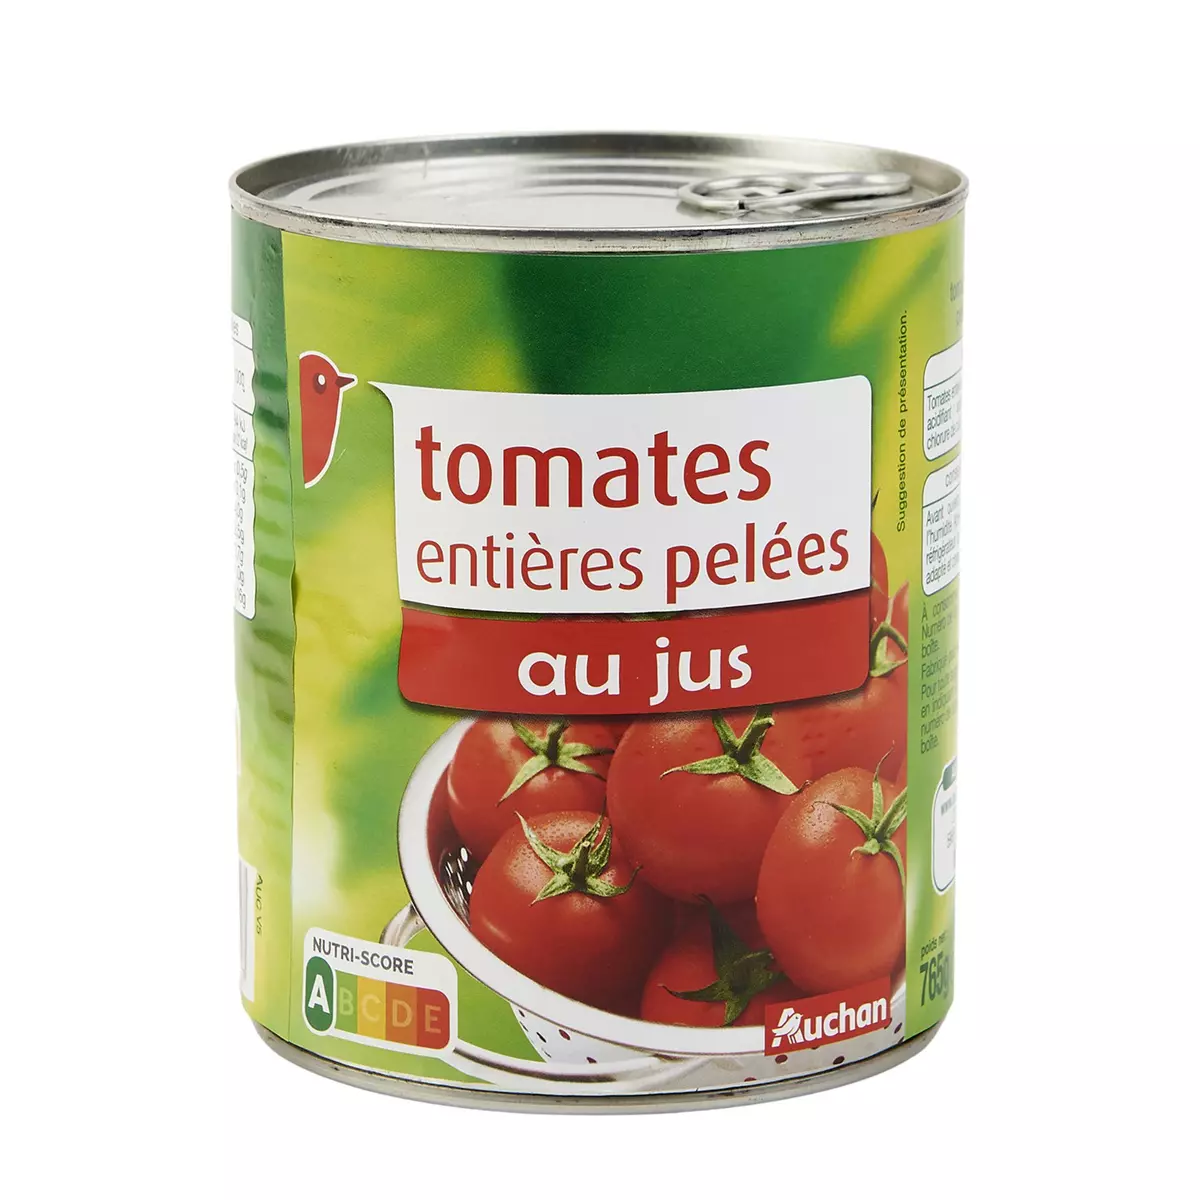 AUCHAN Tomates entières pelées au jus 480g